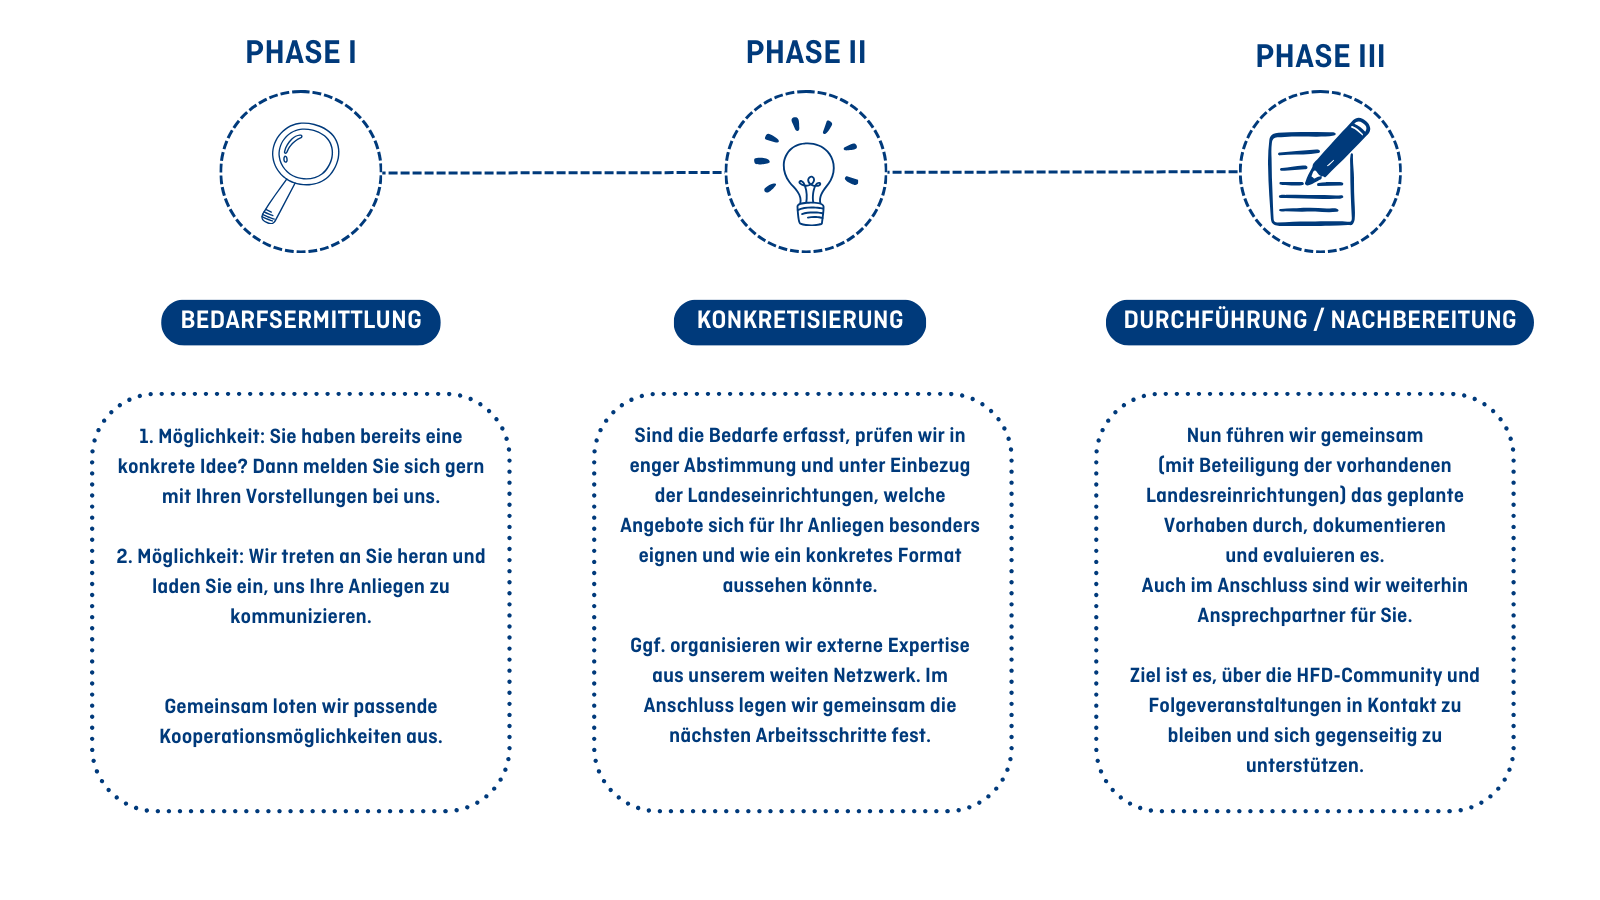 Überblick der einzelnen 3 Phasen (Bedarfsermittlung, Konkretisierung, Durchführung/ Nachbereitung) von HFDlocal.